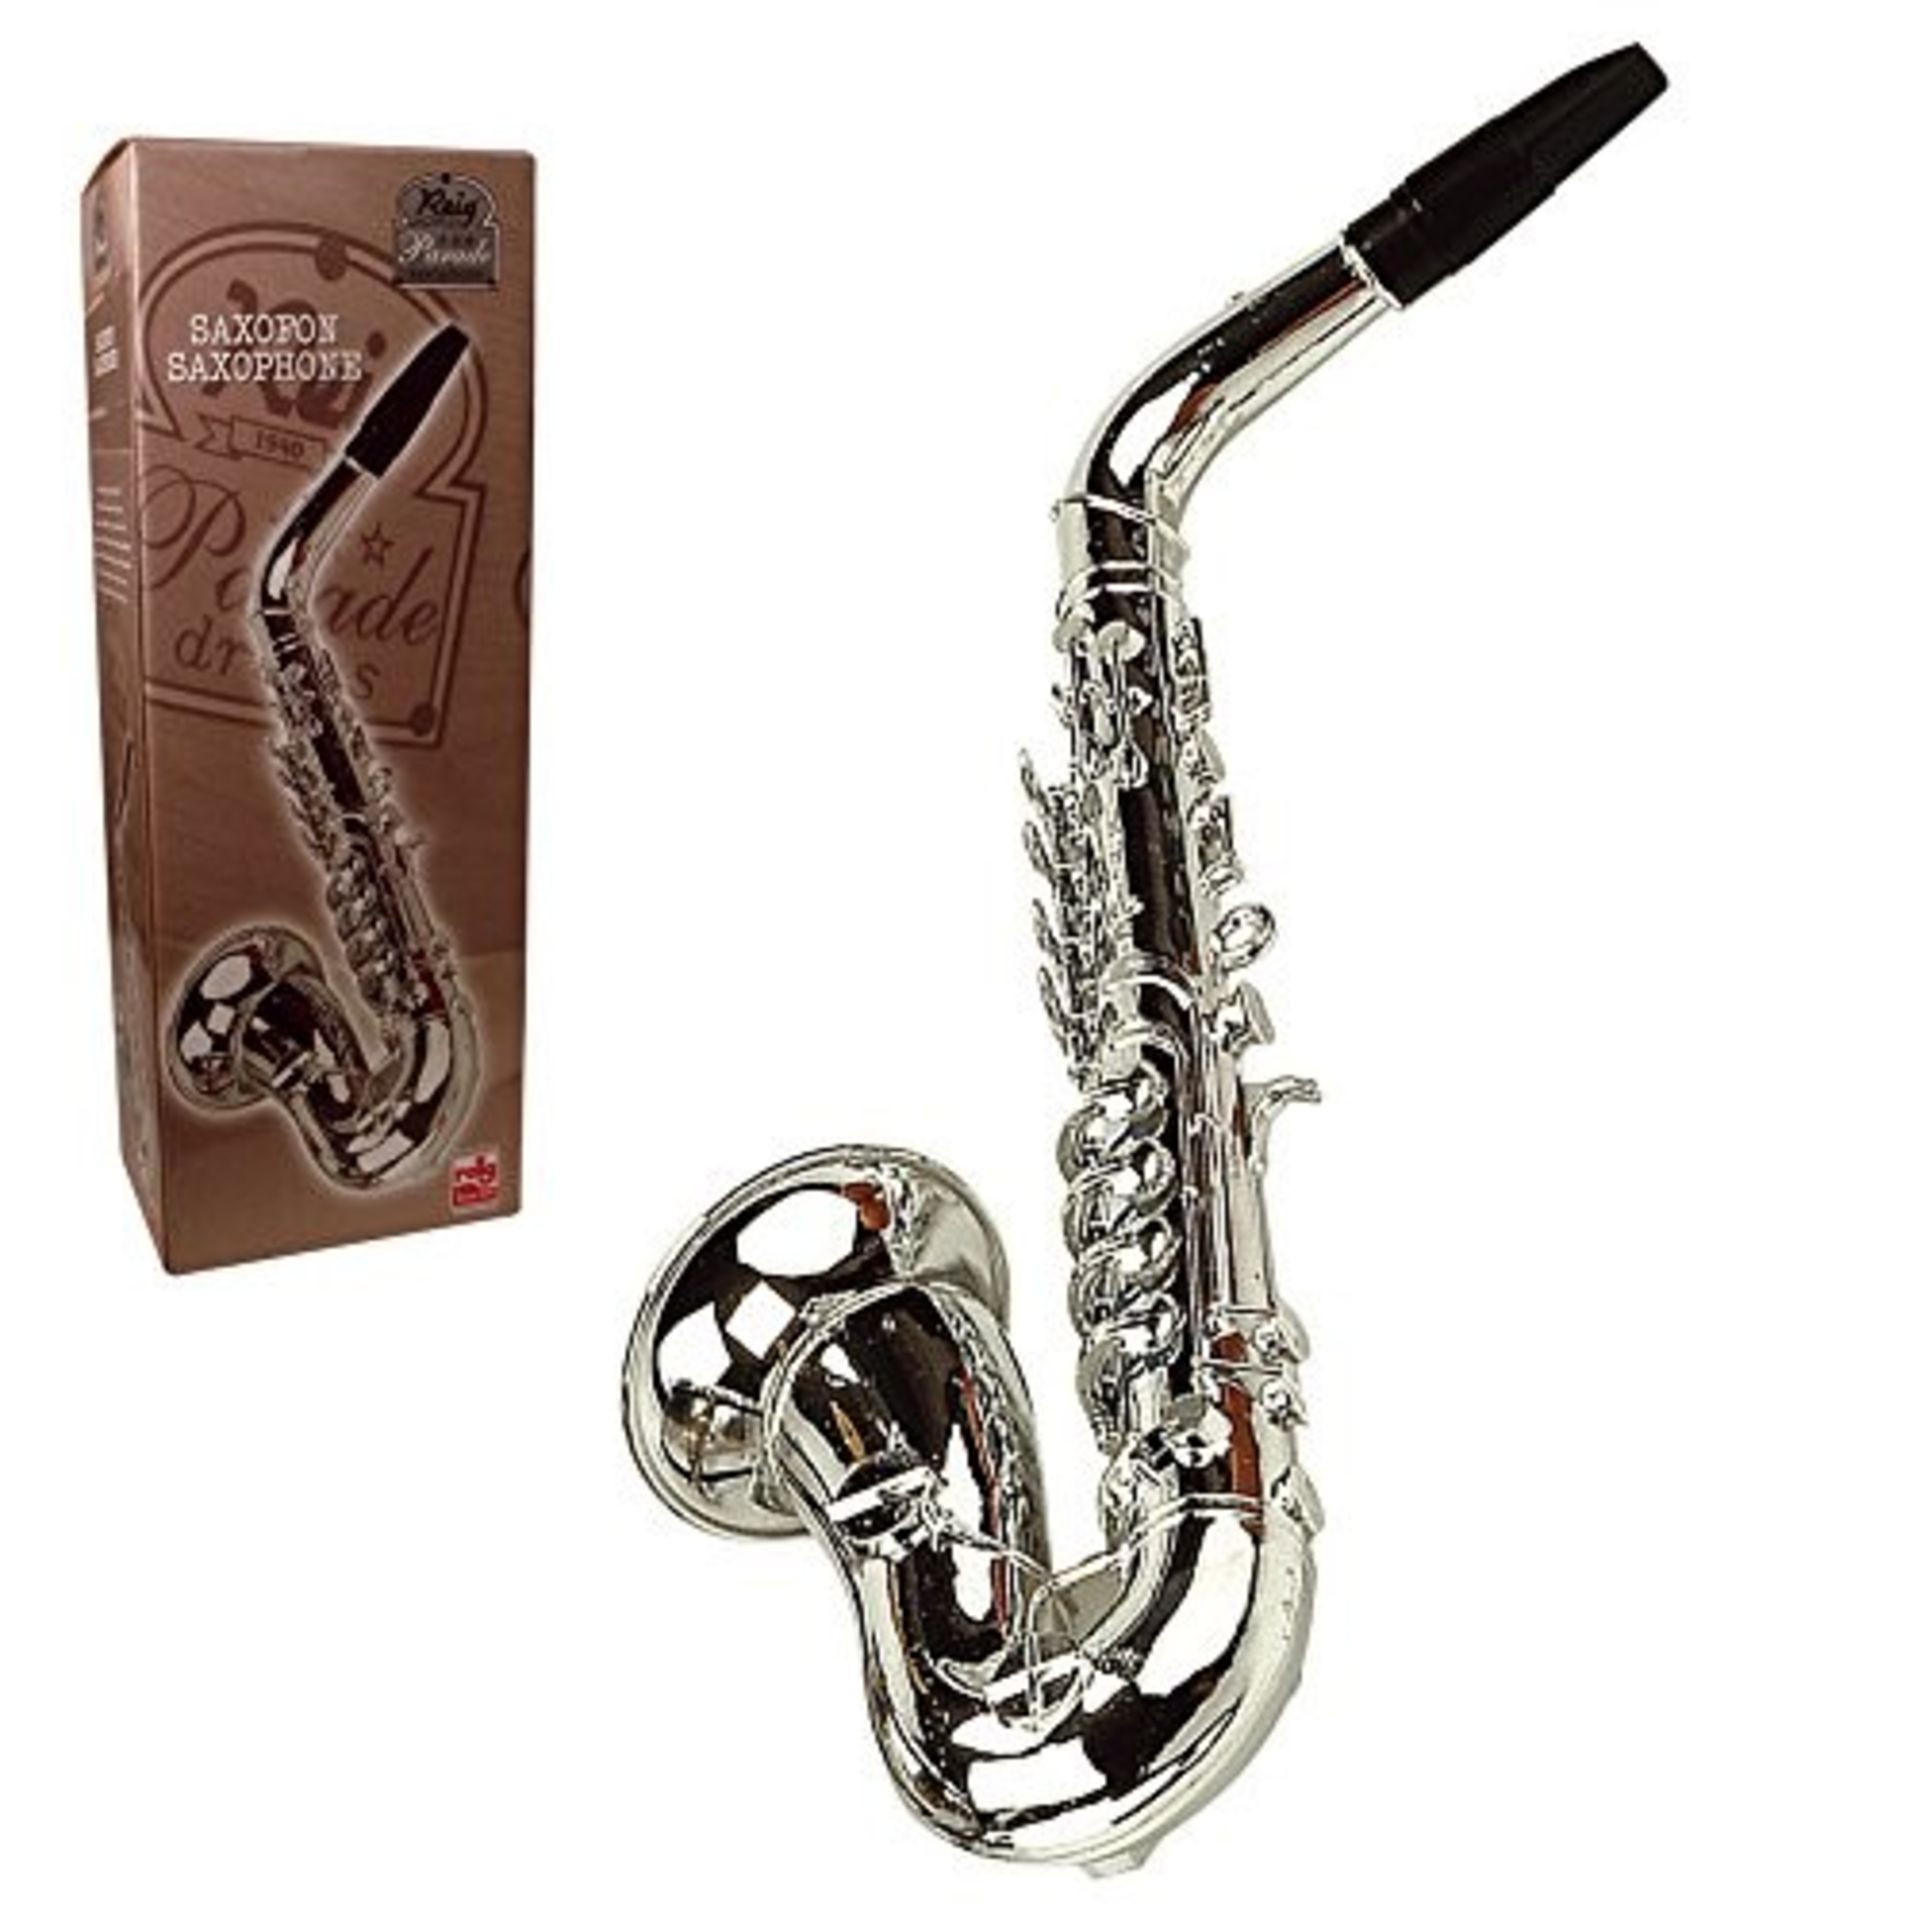 REIG- Saxophone Jouet, 284